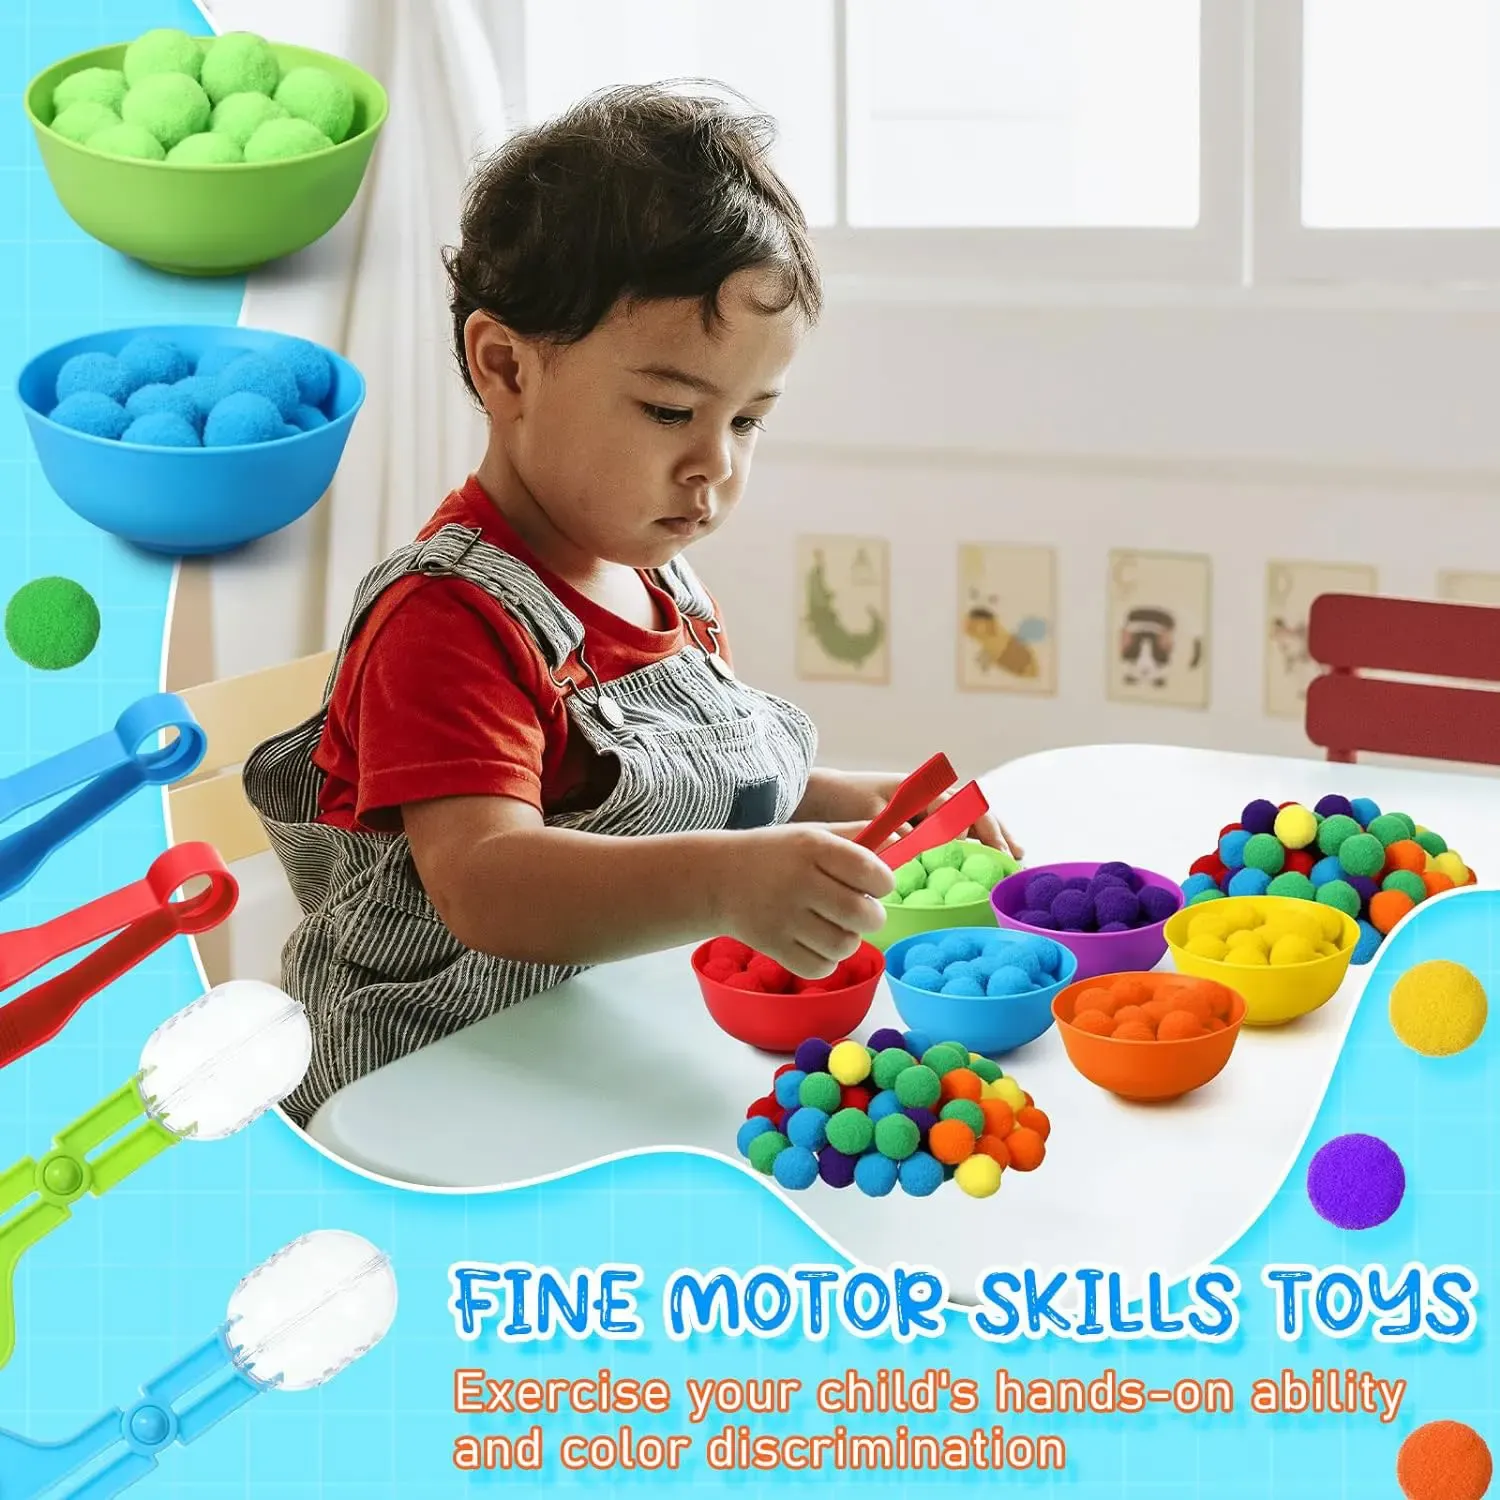 3 Jahre alte Kinder Regenbogenzählung Pompoms Spielzeug Sortierbecher Montessori Sensorisches Spielzeug Vorschule Lernaktivitäten Mathematikspielzeug